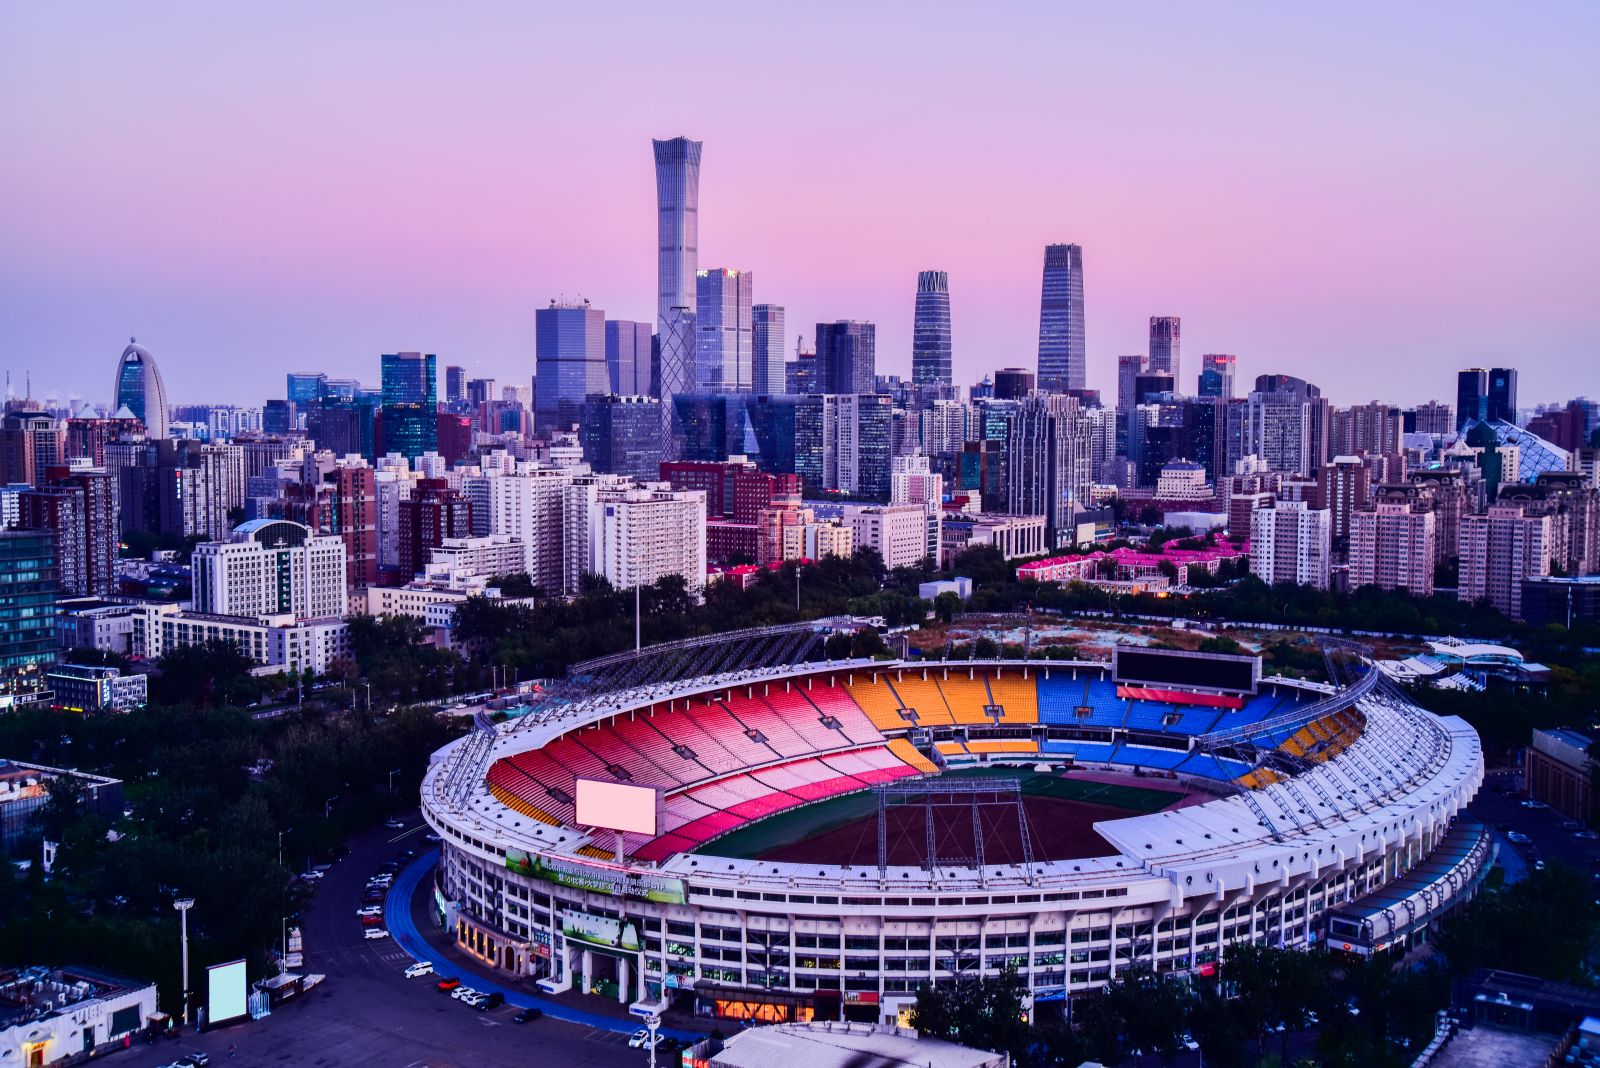 Beijing Workers’ Sports Complex